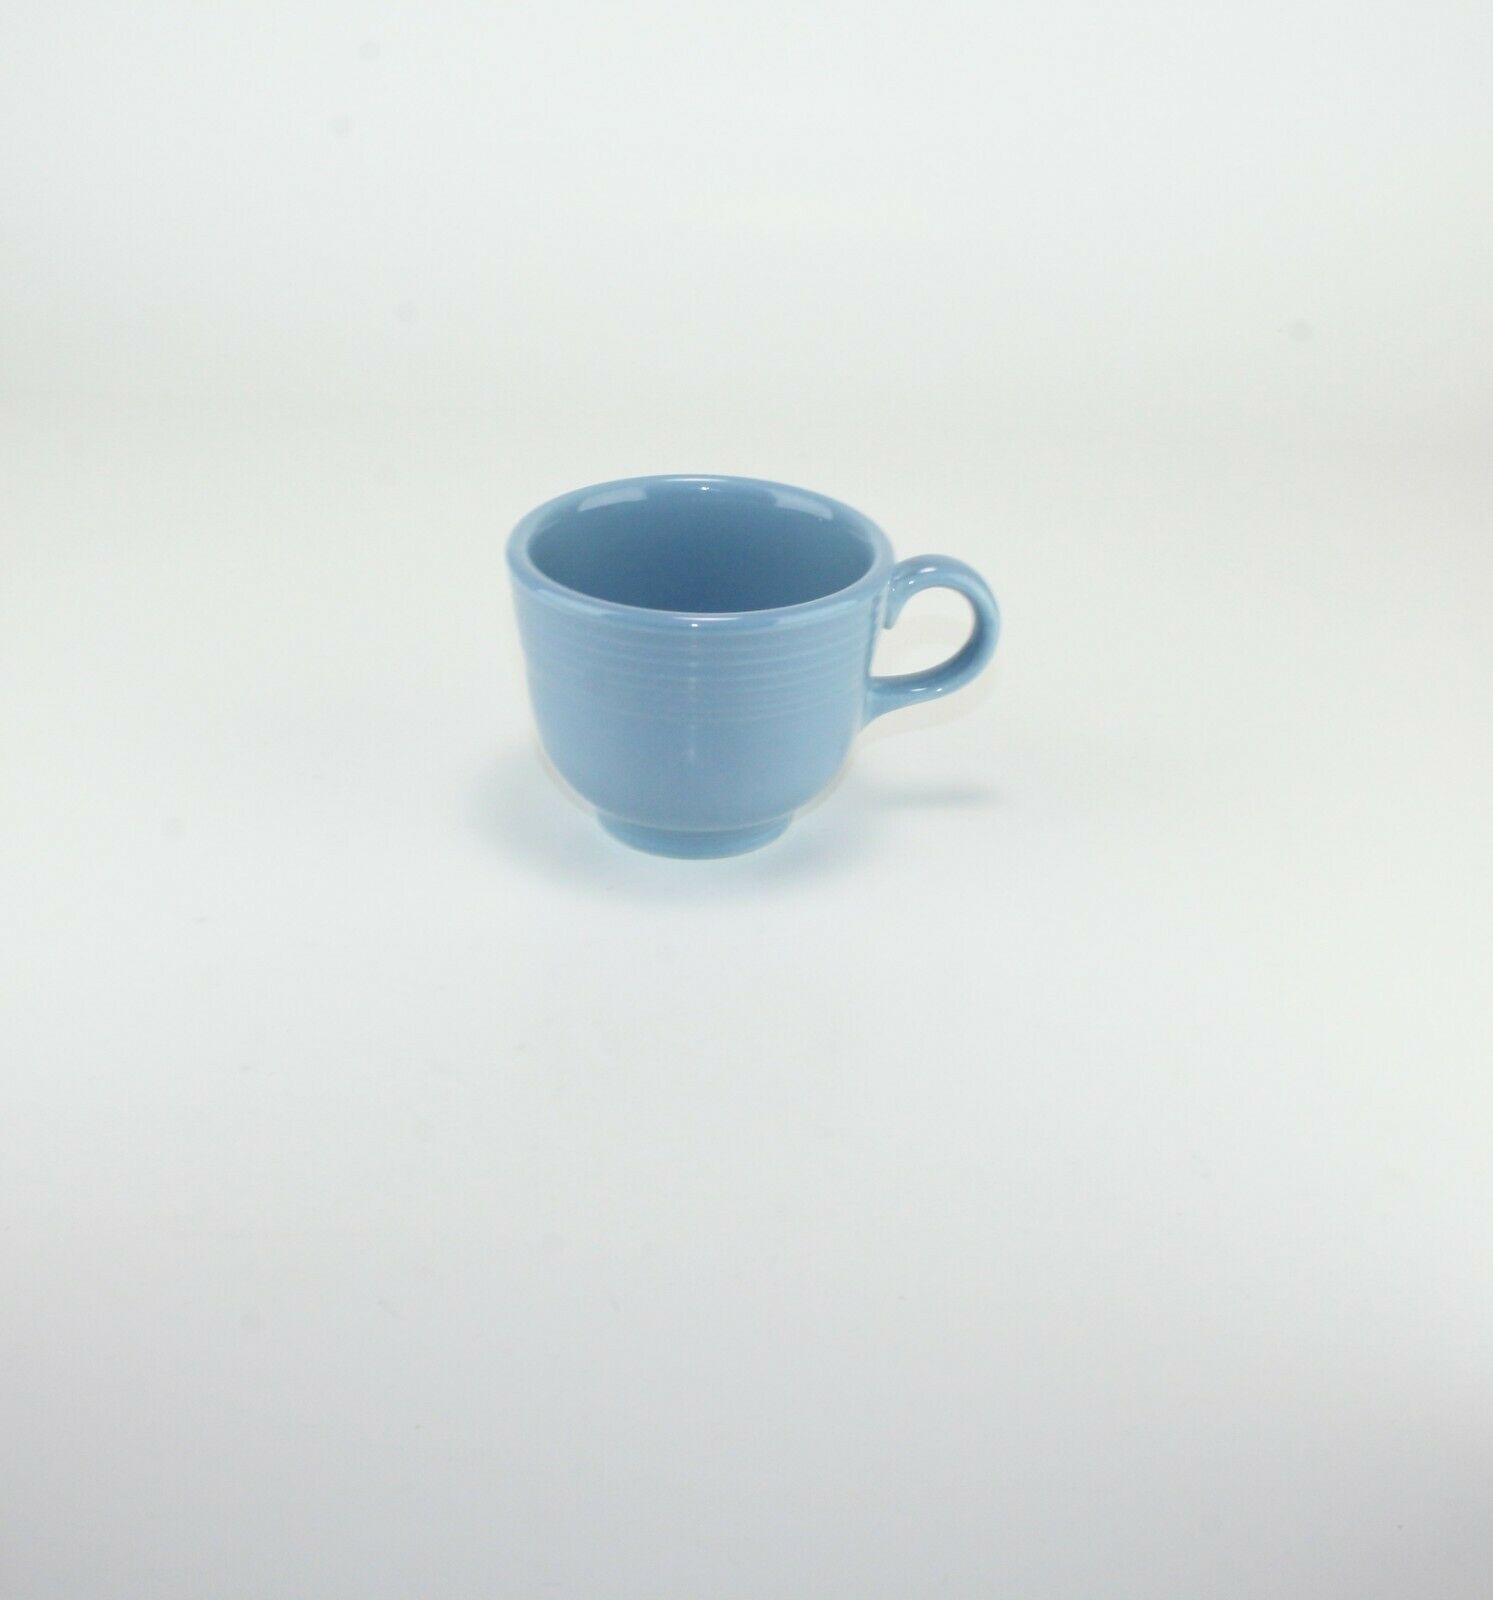 2 Fiesta Homer Laughlin Coffee Tea Cups Blue - $23.76